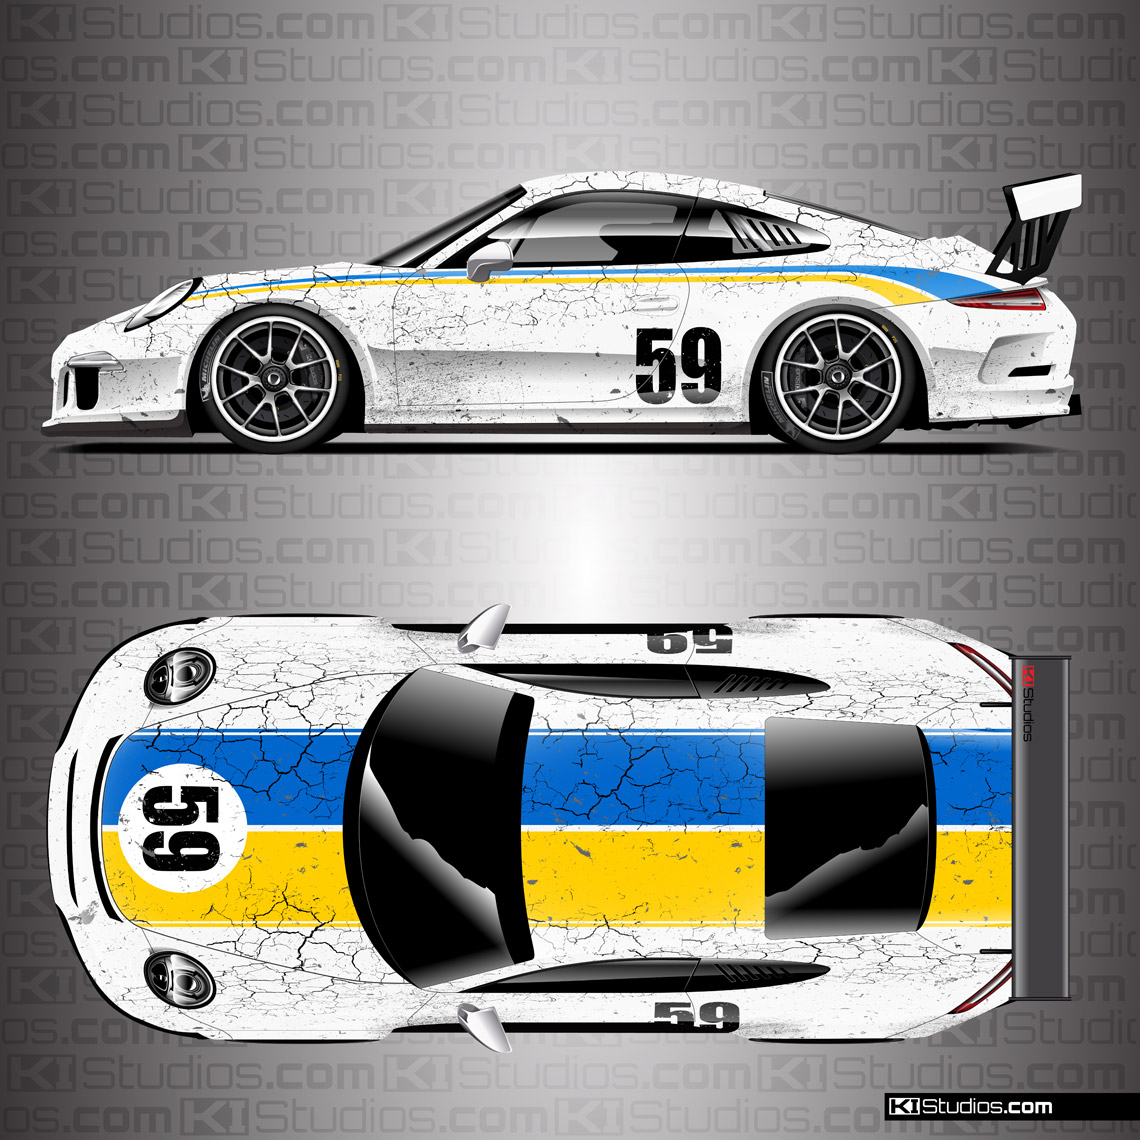 Porsche 991 GT3 Cup Car Livery by KI Studios - White, Blue, Yellow